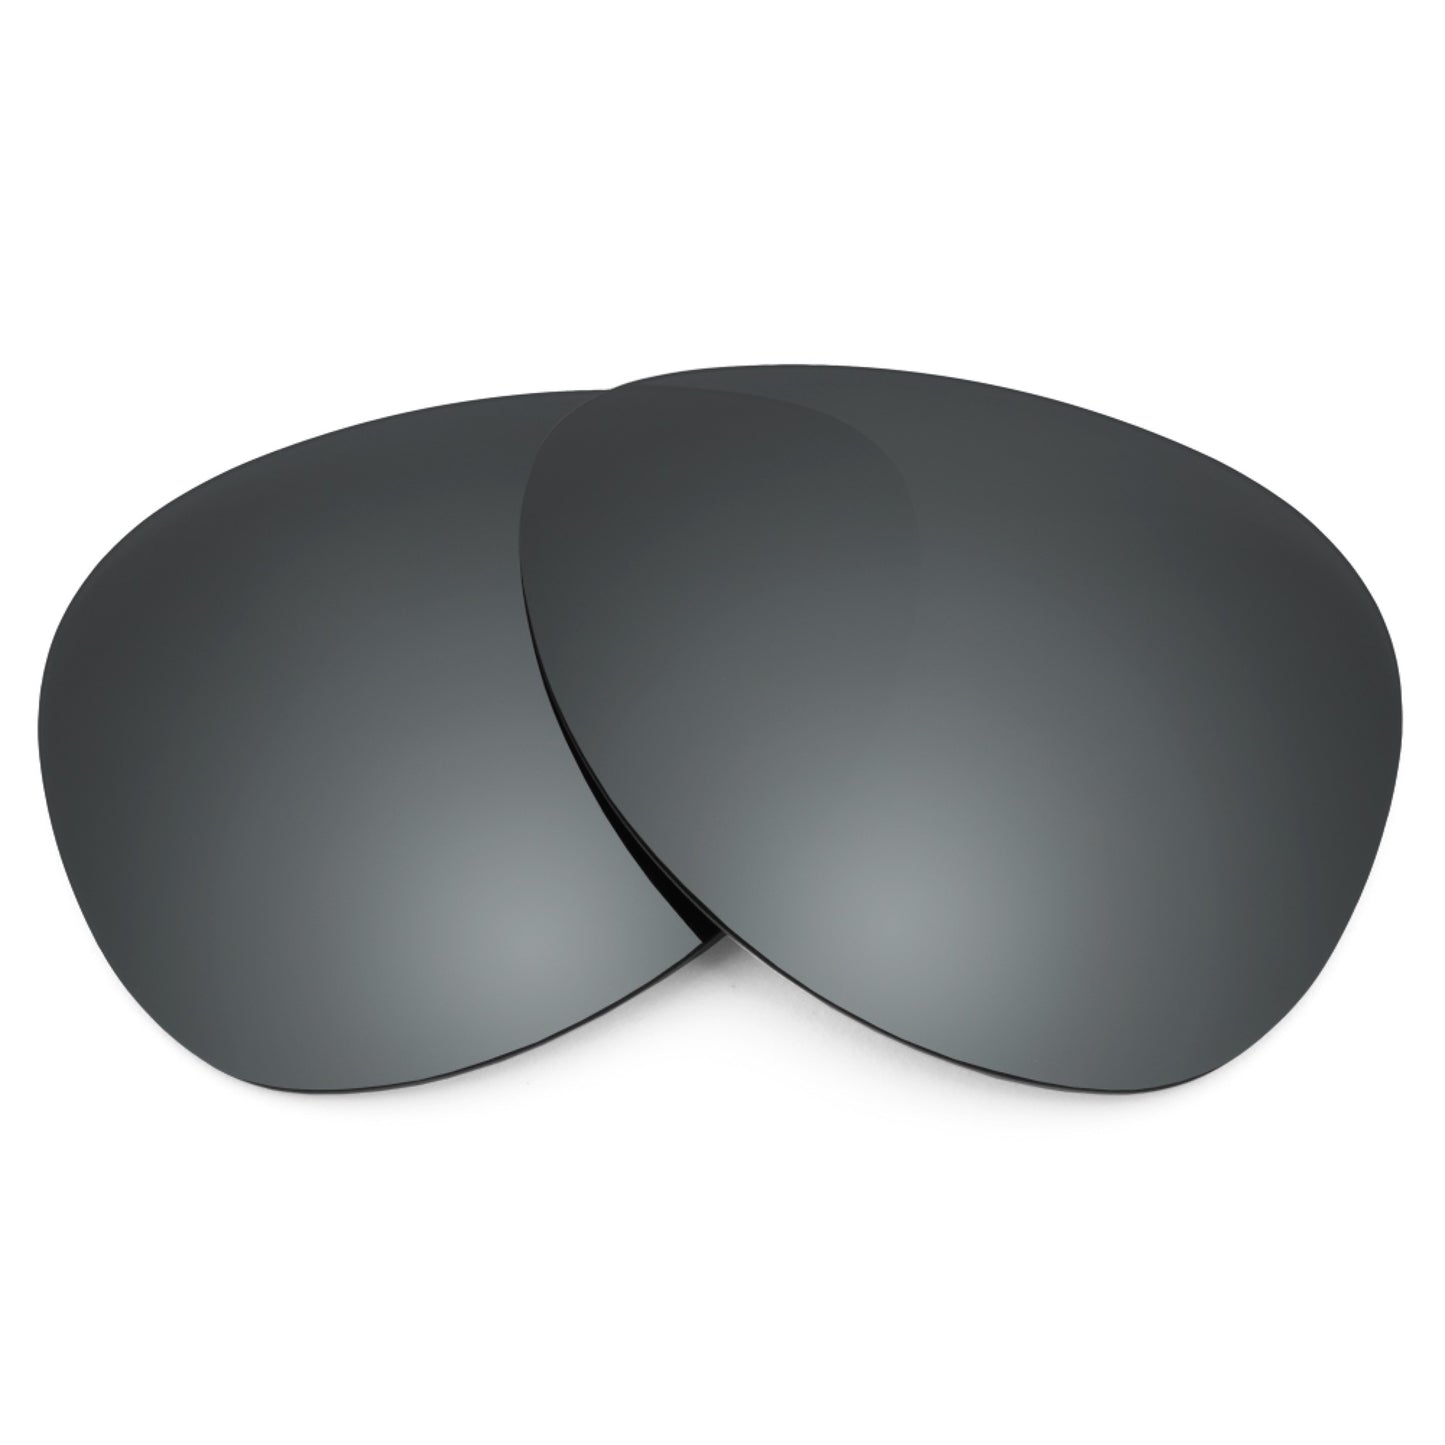 Revant replacement lenses for Maui Jim Honomanu MJ260 Non-Polarized Black Chrome